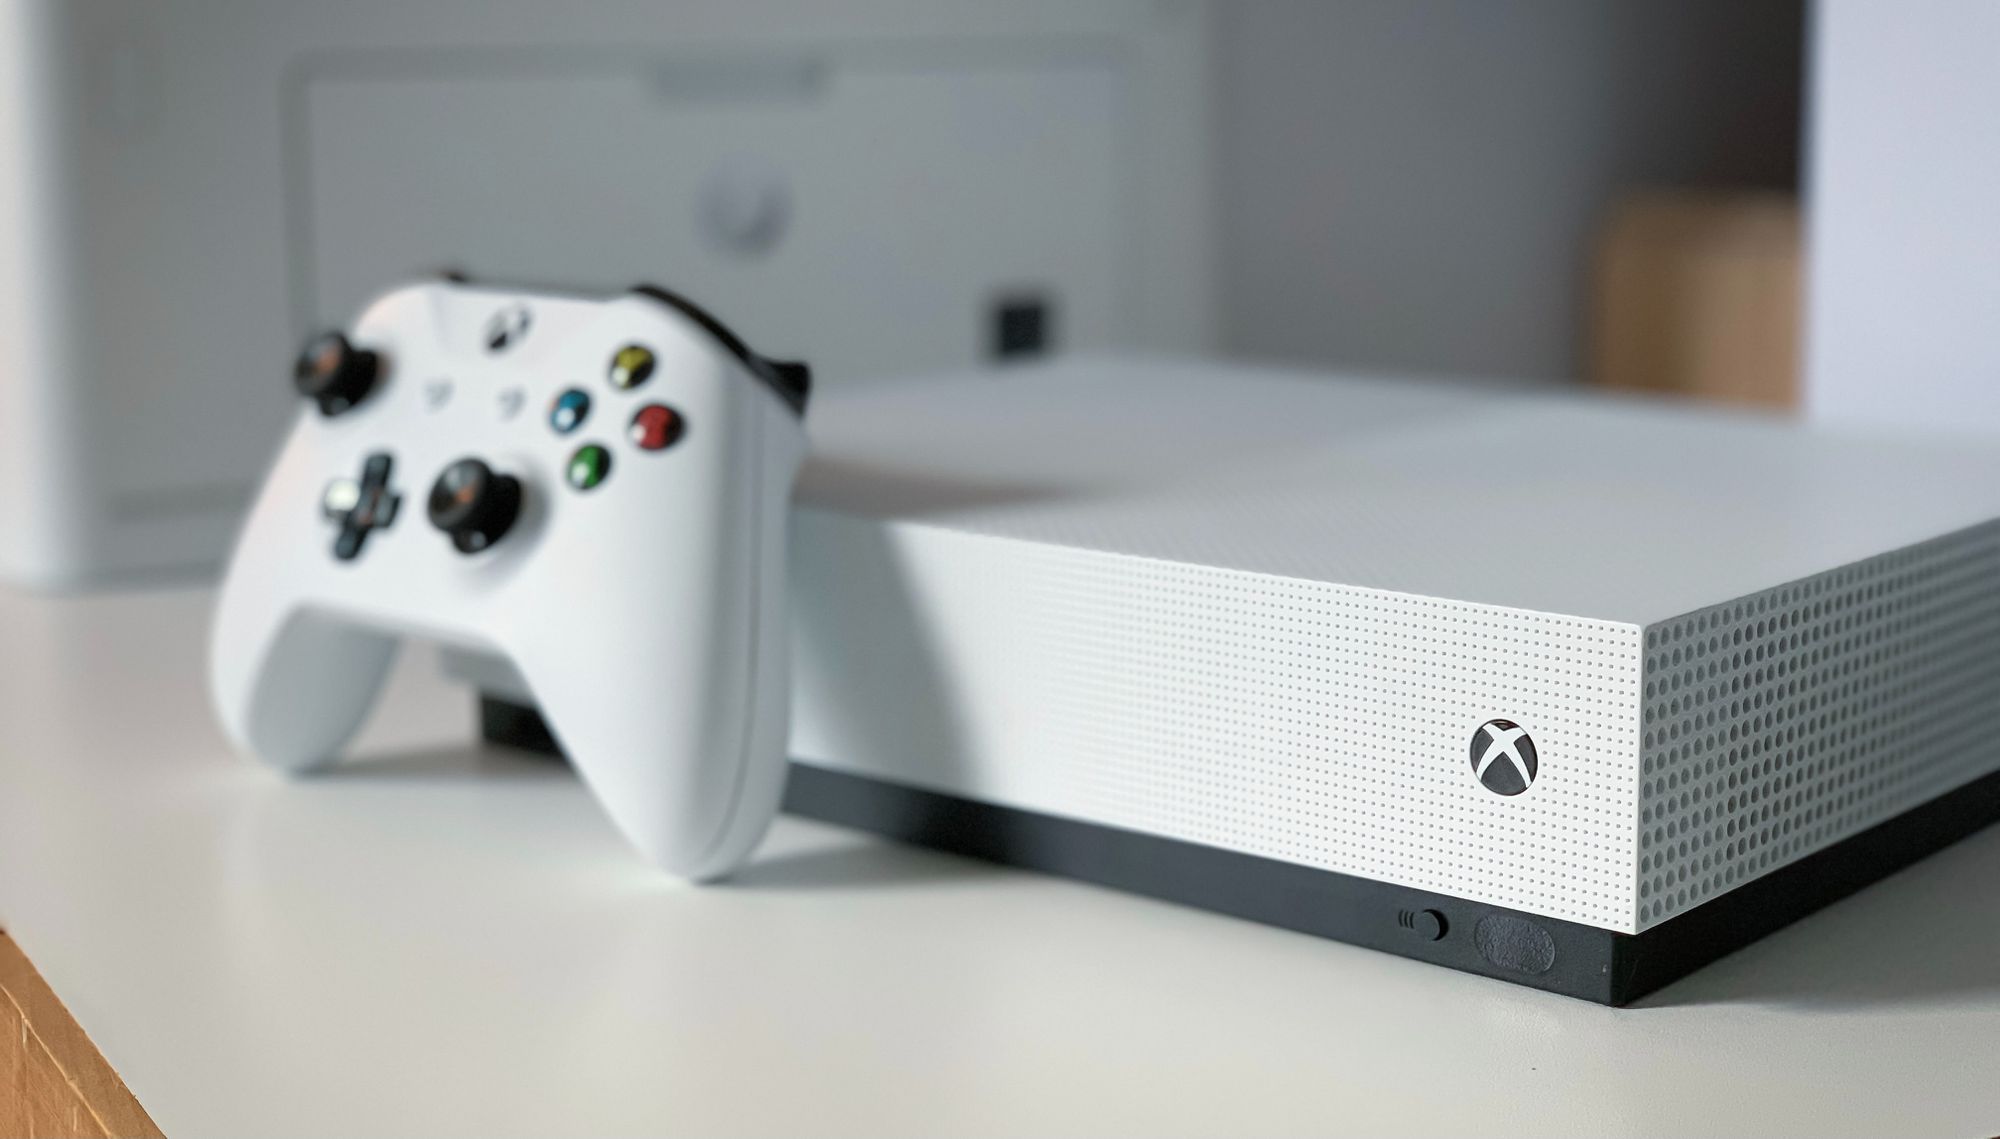 Valkoinen Xbox One -konsoli, jossa valkoinen ohjain nojaa sitä vasten.